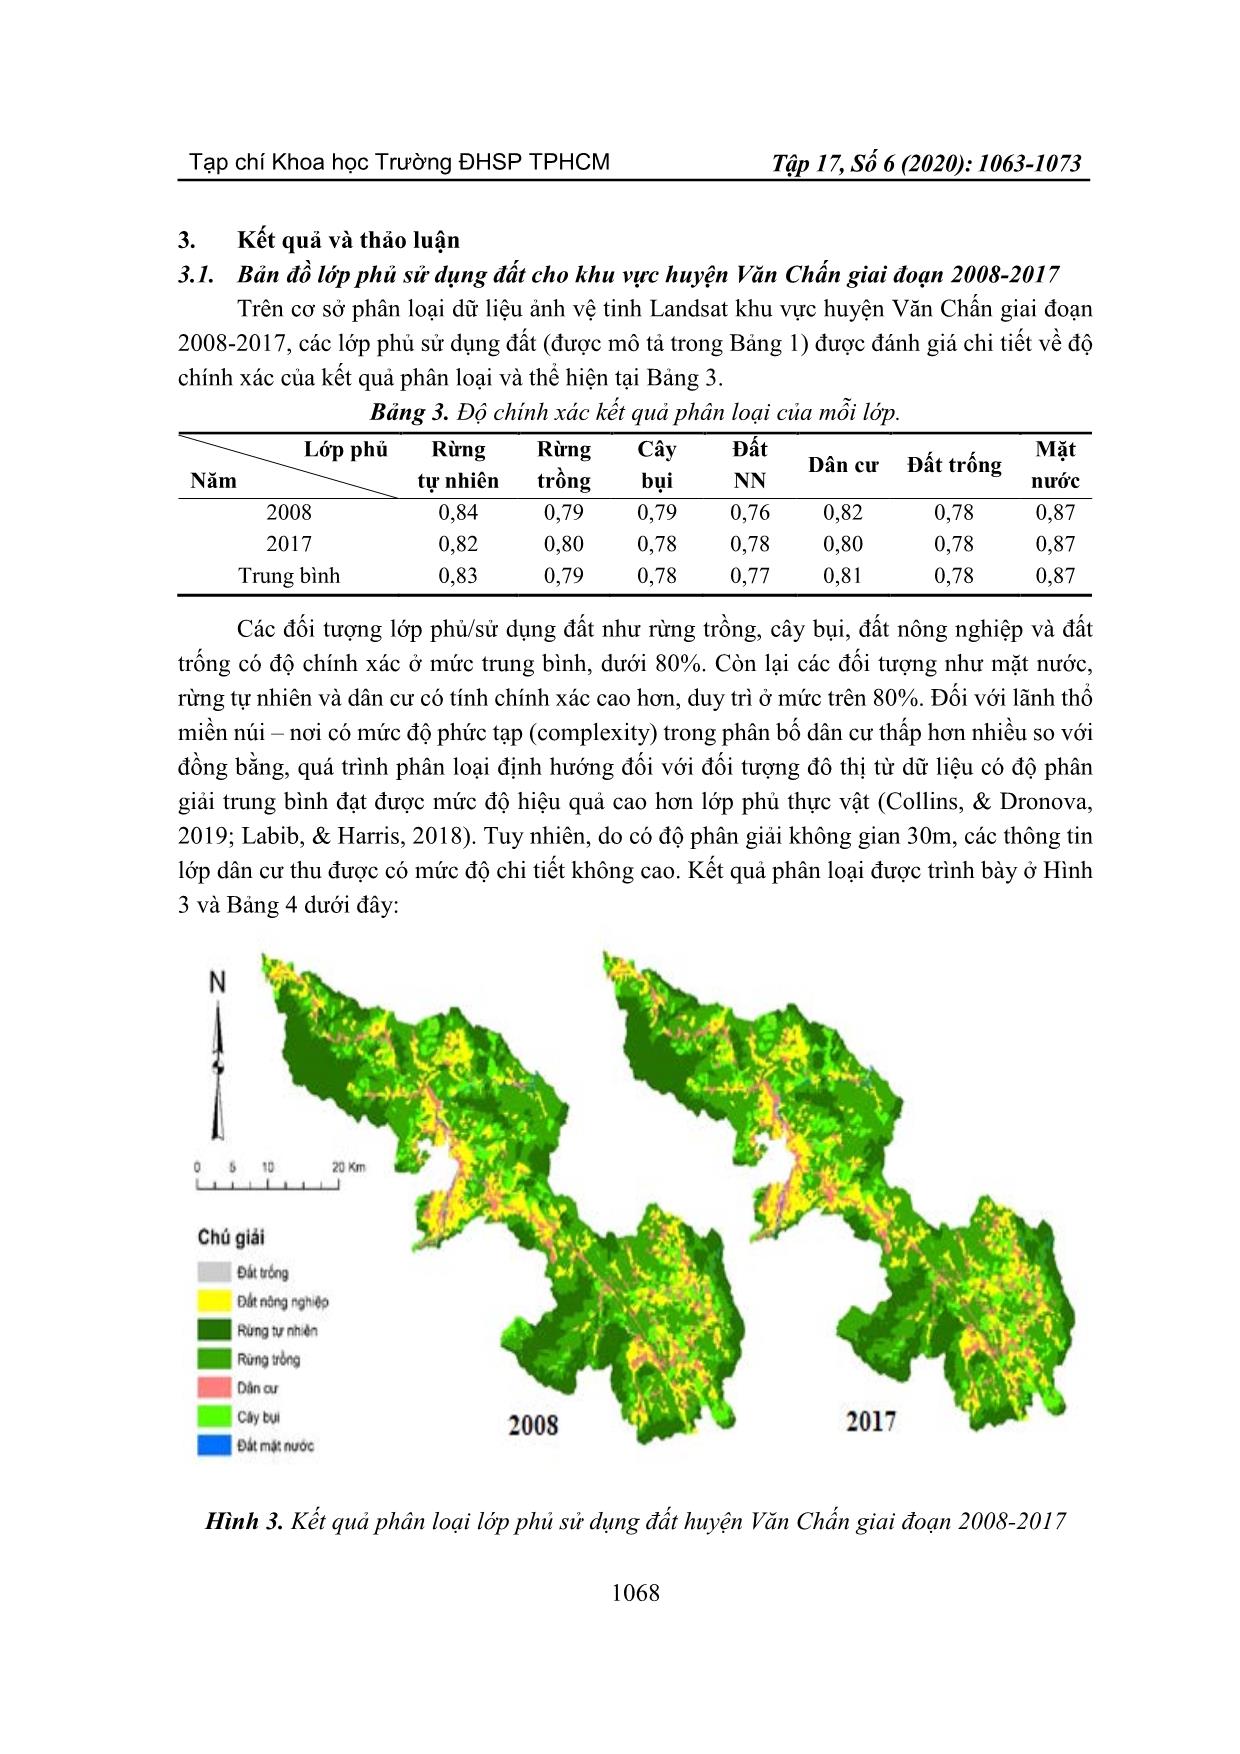 Ứng dụng viễn thám và độ đo cảnh quan trong phân tích xu thế biến động sử dụng đất khu vực huyện Văn Chấn, tỉnh Yên Bái giai đoạn 2008-2017 trang 6